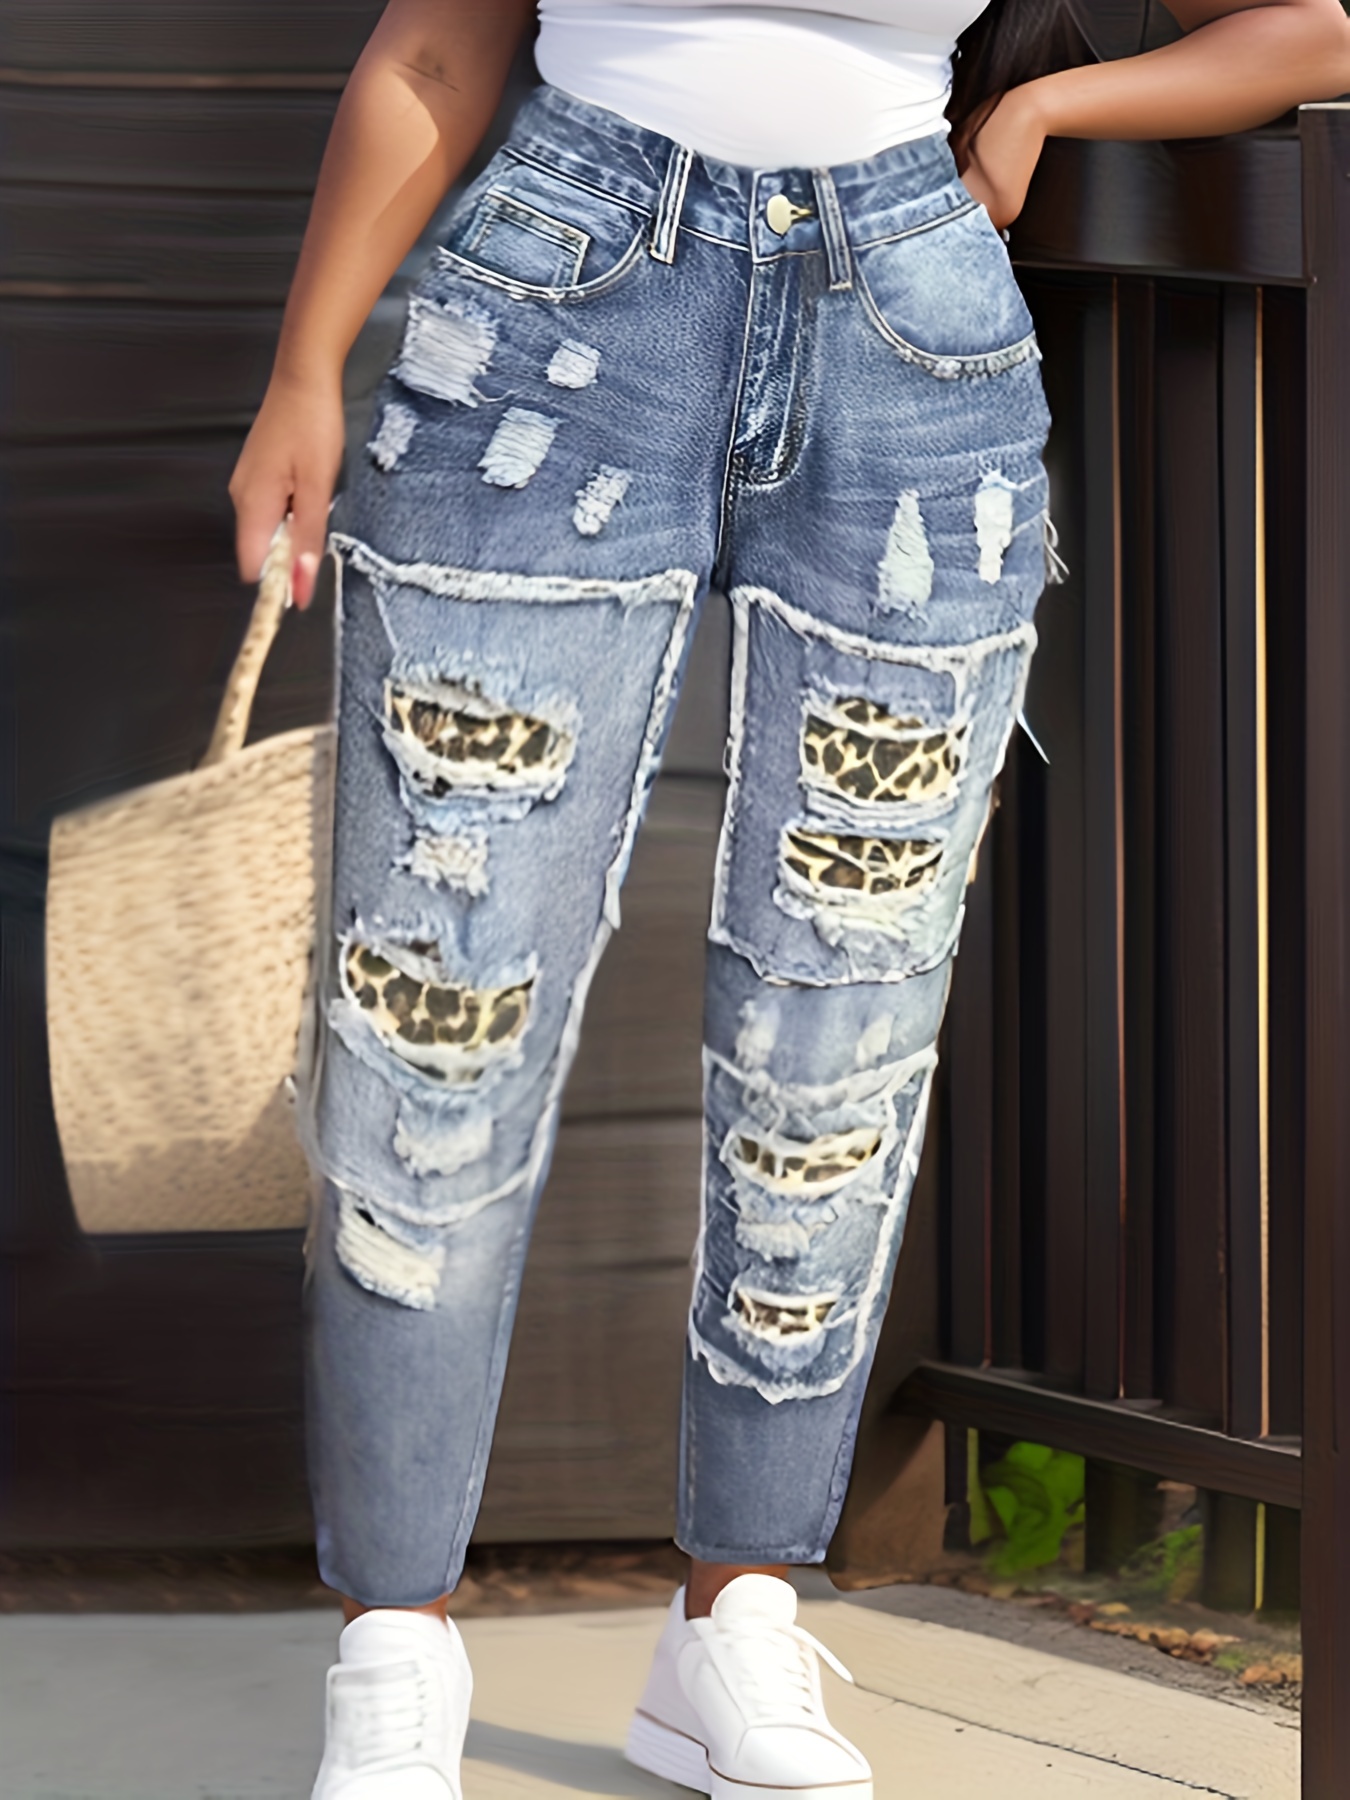 Jeans Estampados Mujer